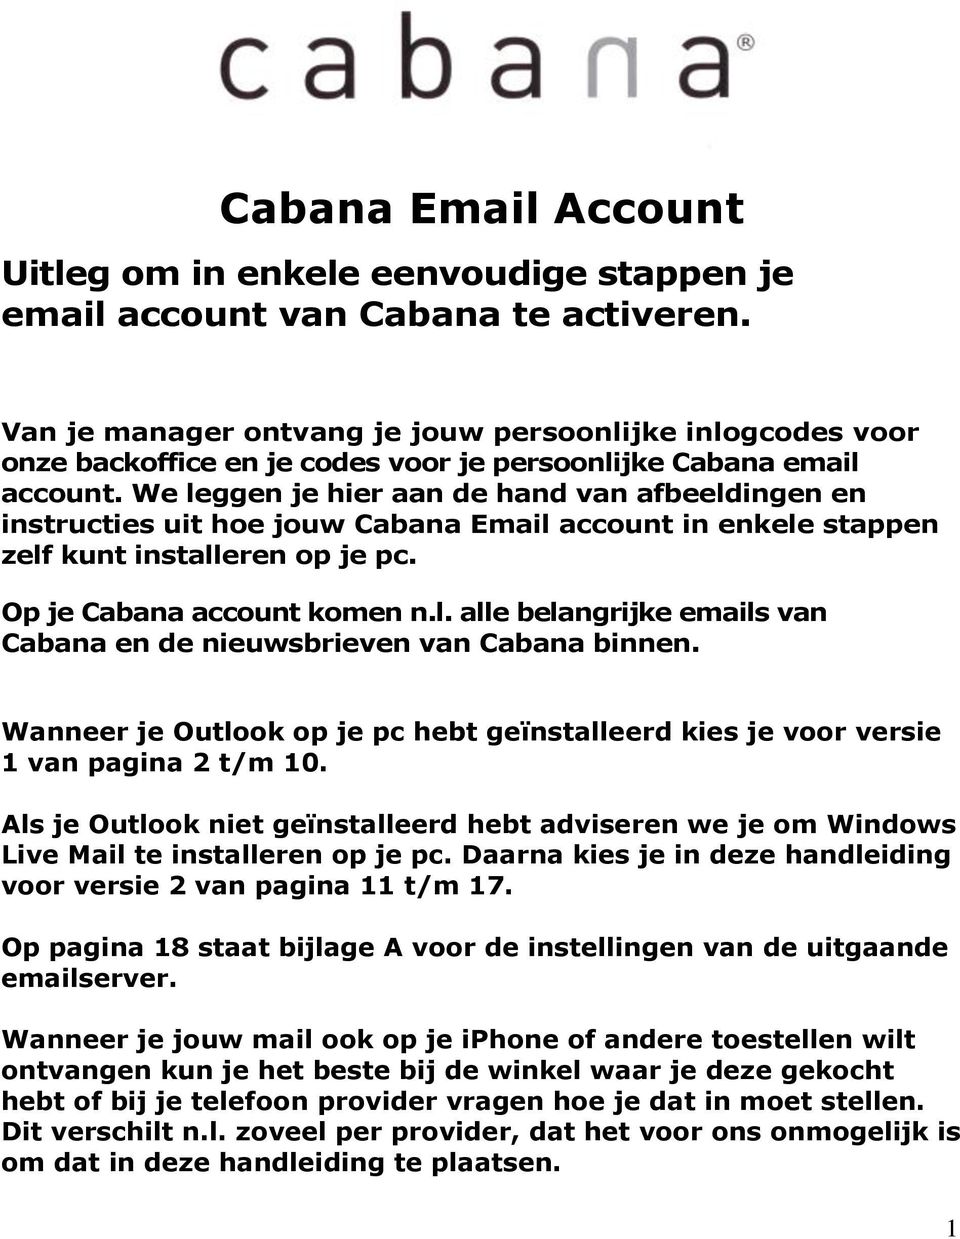 We leggen je hier aan de hand van afbeeldingen en instructies uit hoe jouw Cabana Email account in enkele stappen zelf kunt installeren op je pc. Op je Cabana account komen n.l. alle belangrijke emails van Cabana en de nieuwsbrieven van Cabana binnen.